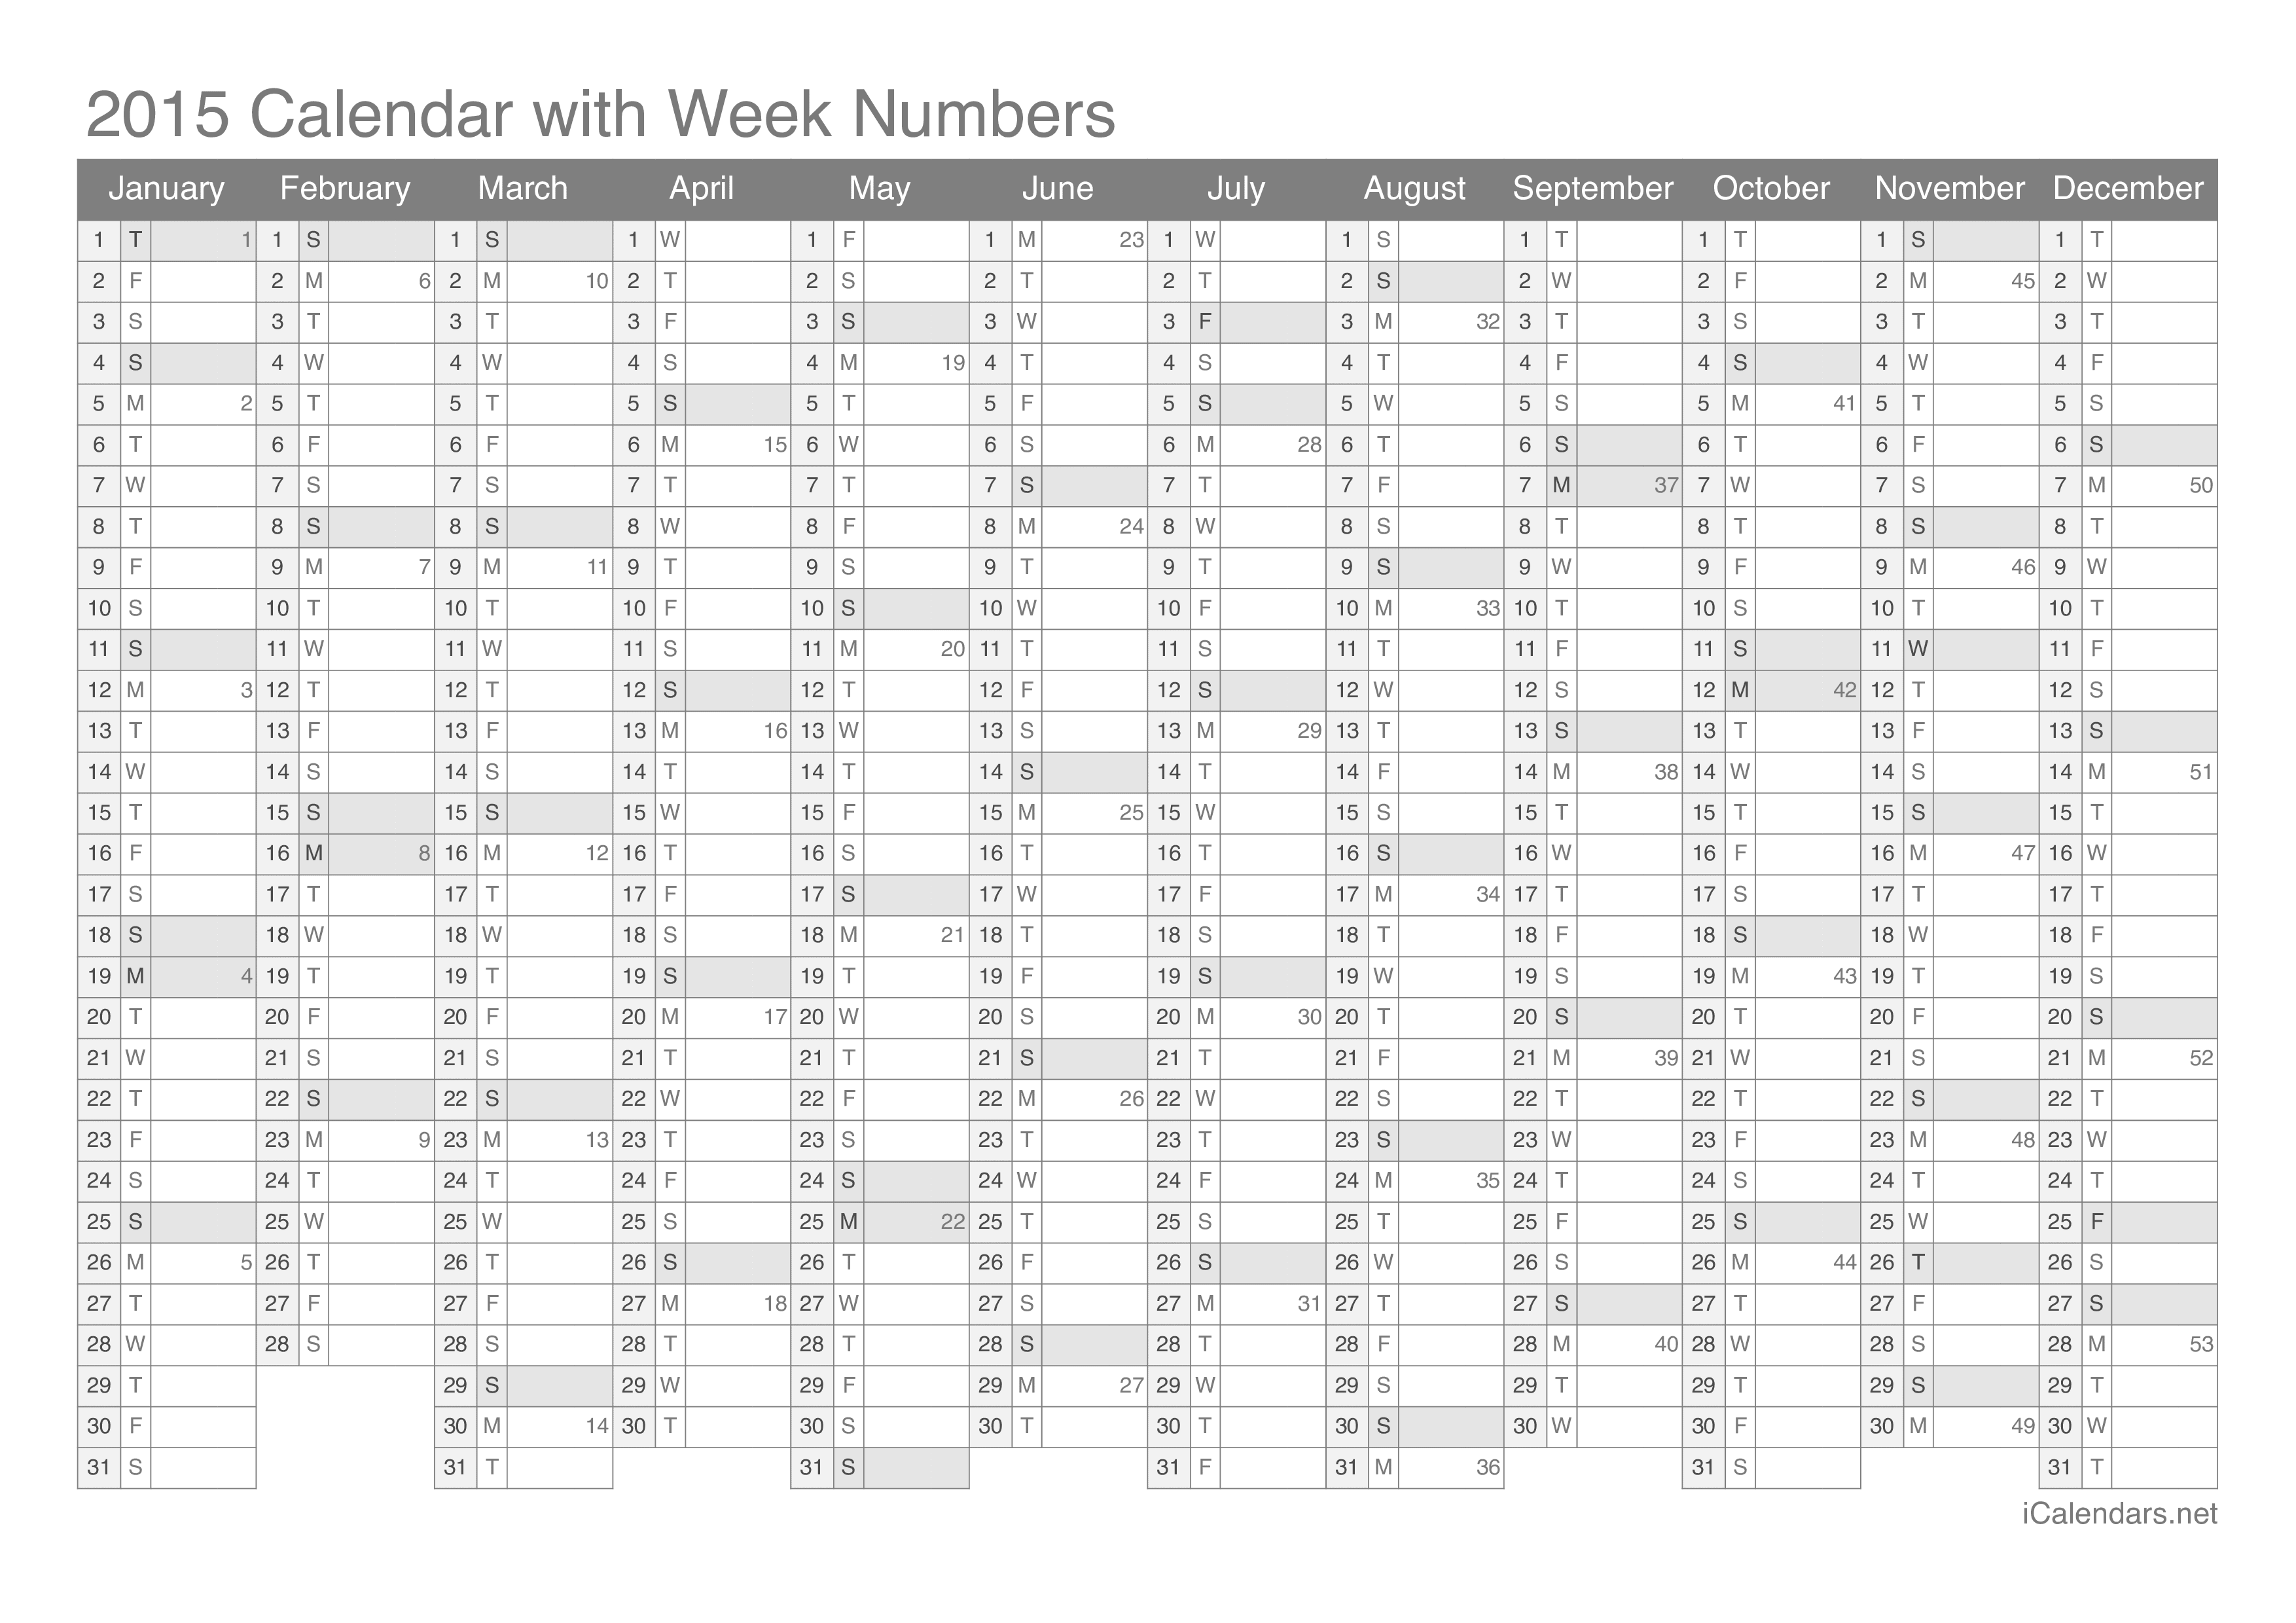 2015 Calendar with week numbers